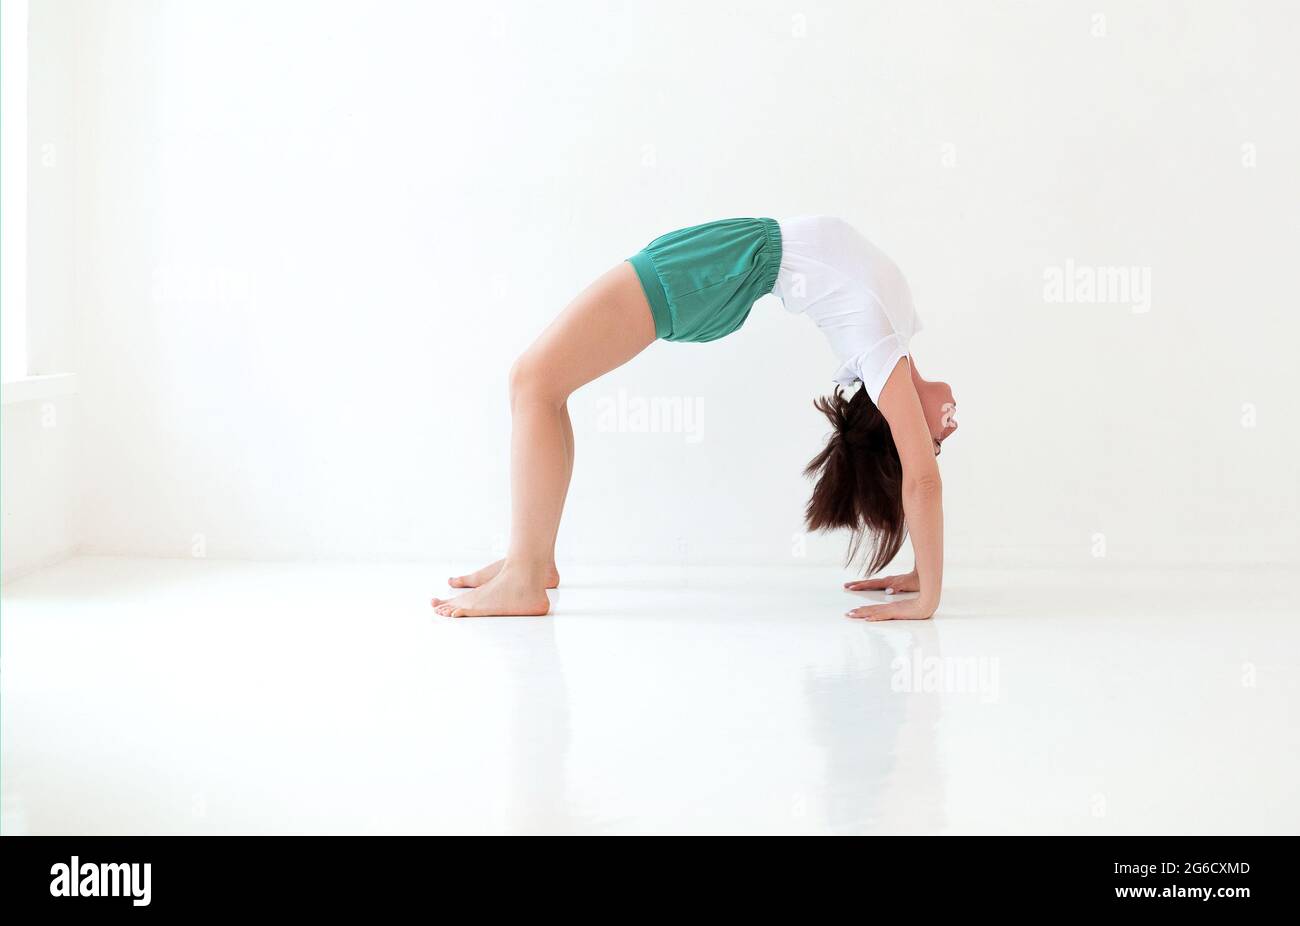 Seitenansicht einer ruhigen Frau in Sportkleidung, die Yoga in Pose praktiziert, während sie auf den Armen balanciert und wegschaut Stockfoto